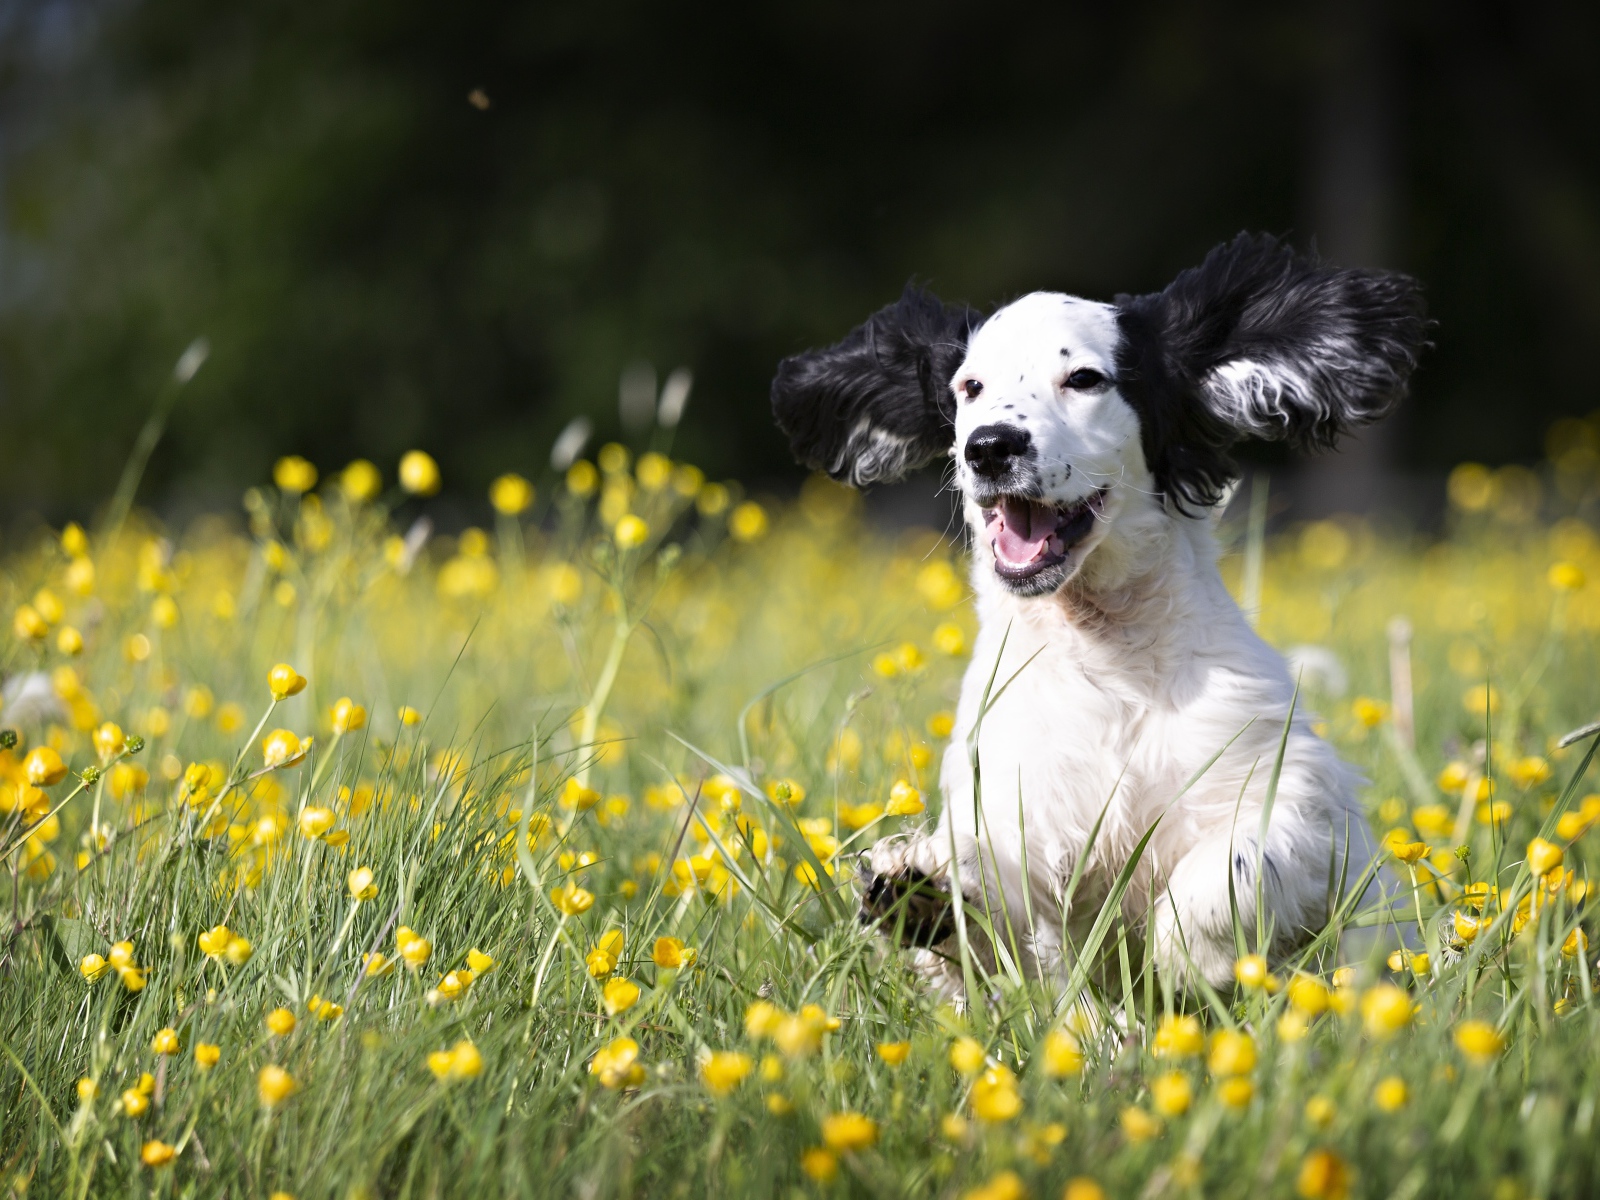 Веселый щенок бежит по зеленой траве с желтыми цветами